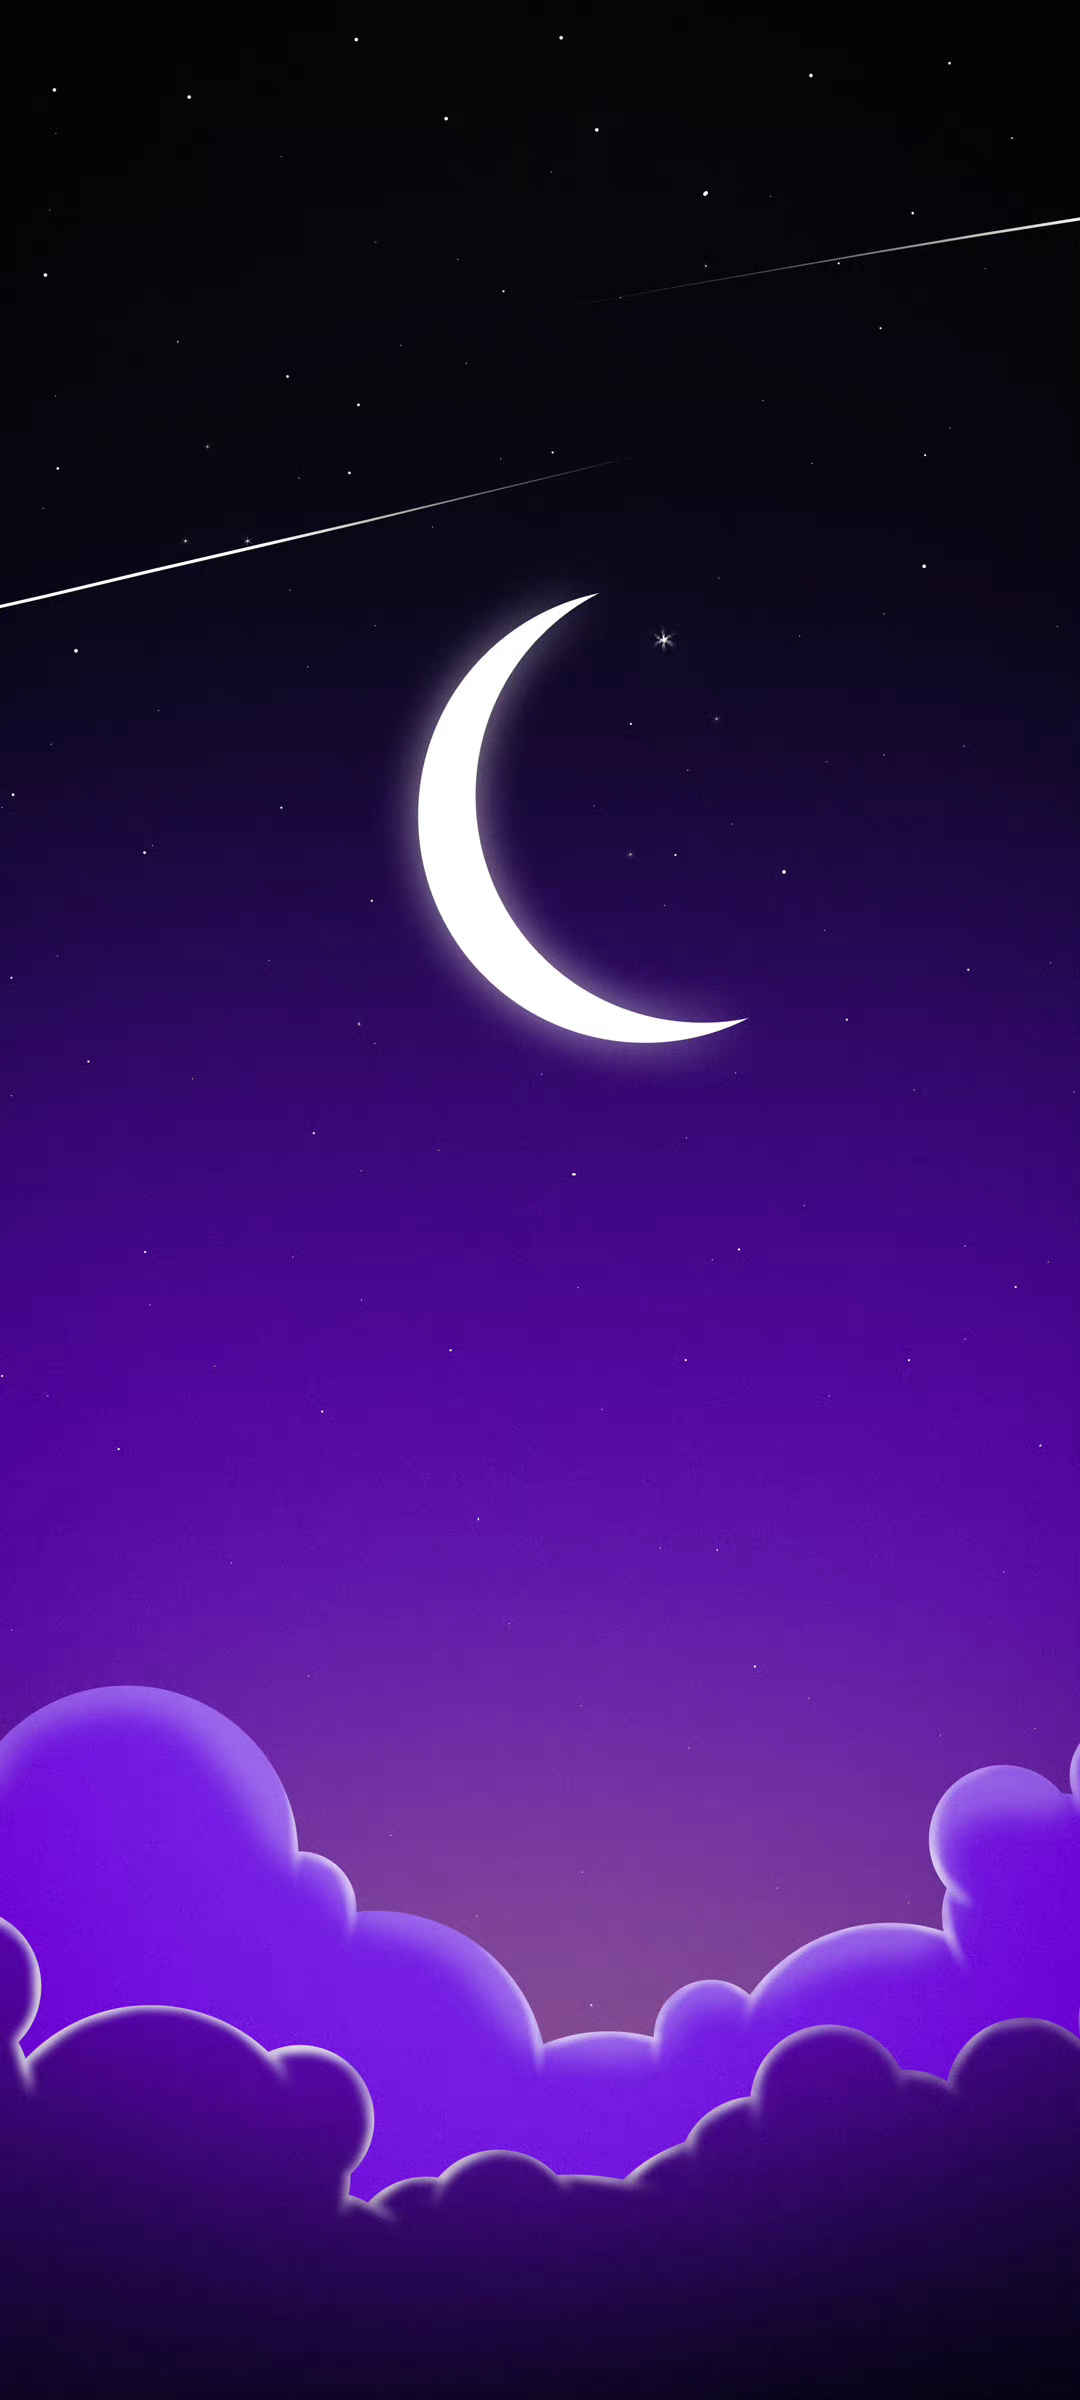  夜空月亮深色风景手机壁纸